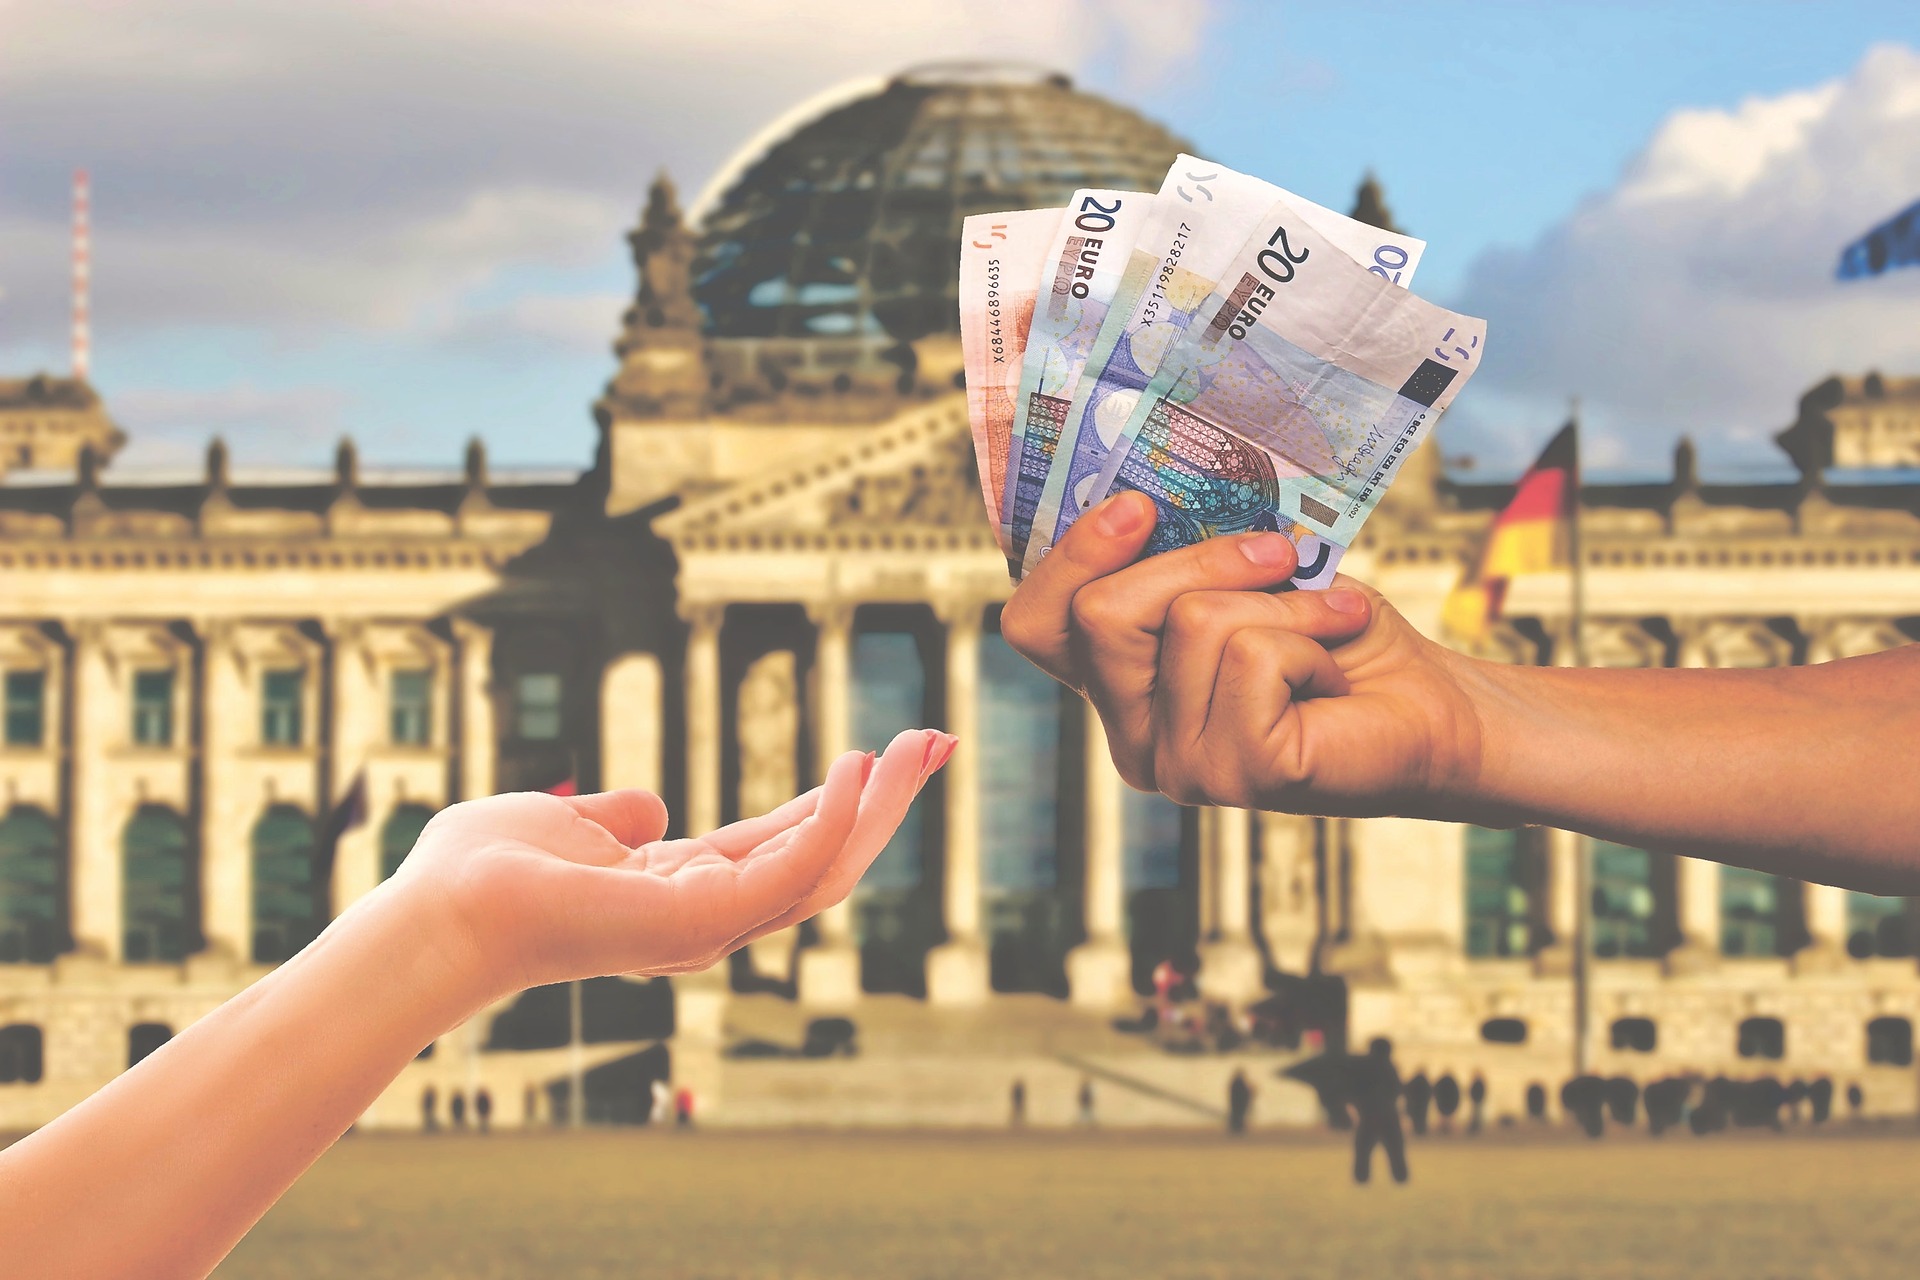 Parlamentul german aprobă creșterea salariului minim la 12 euro pe oră din octombrie